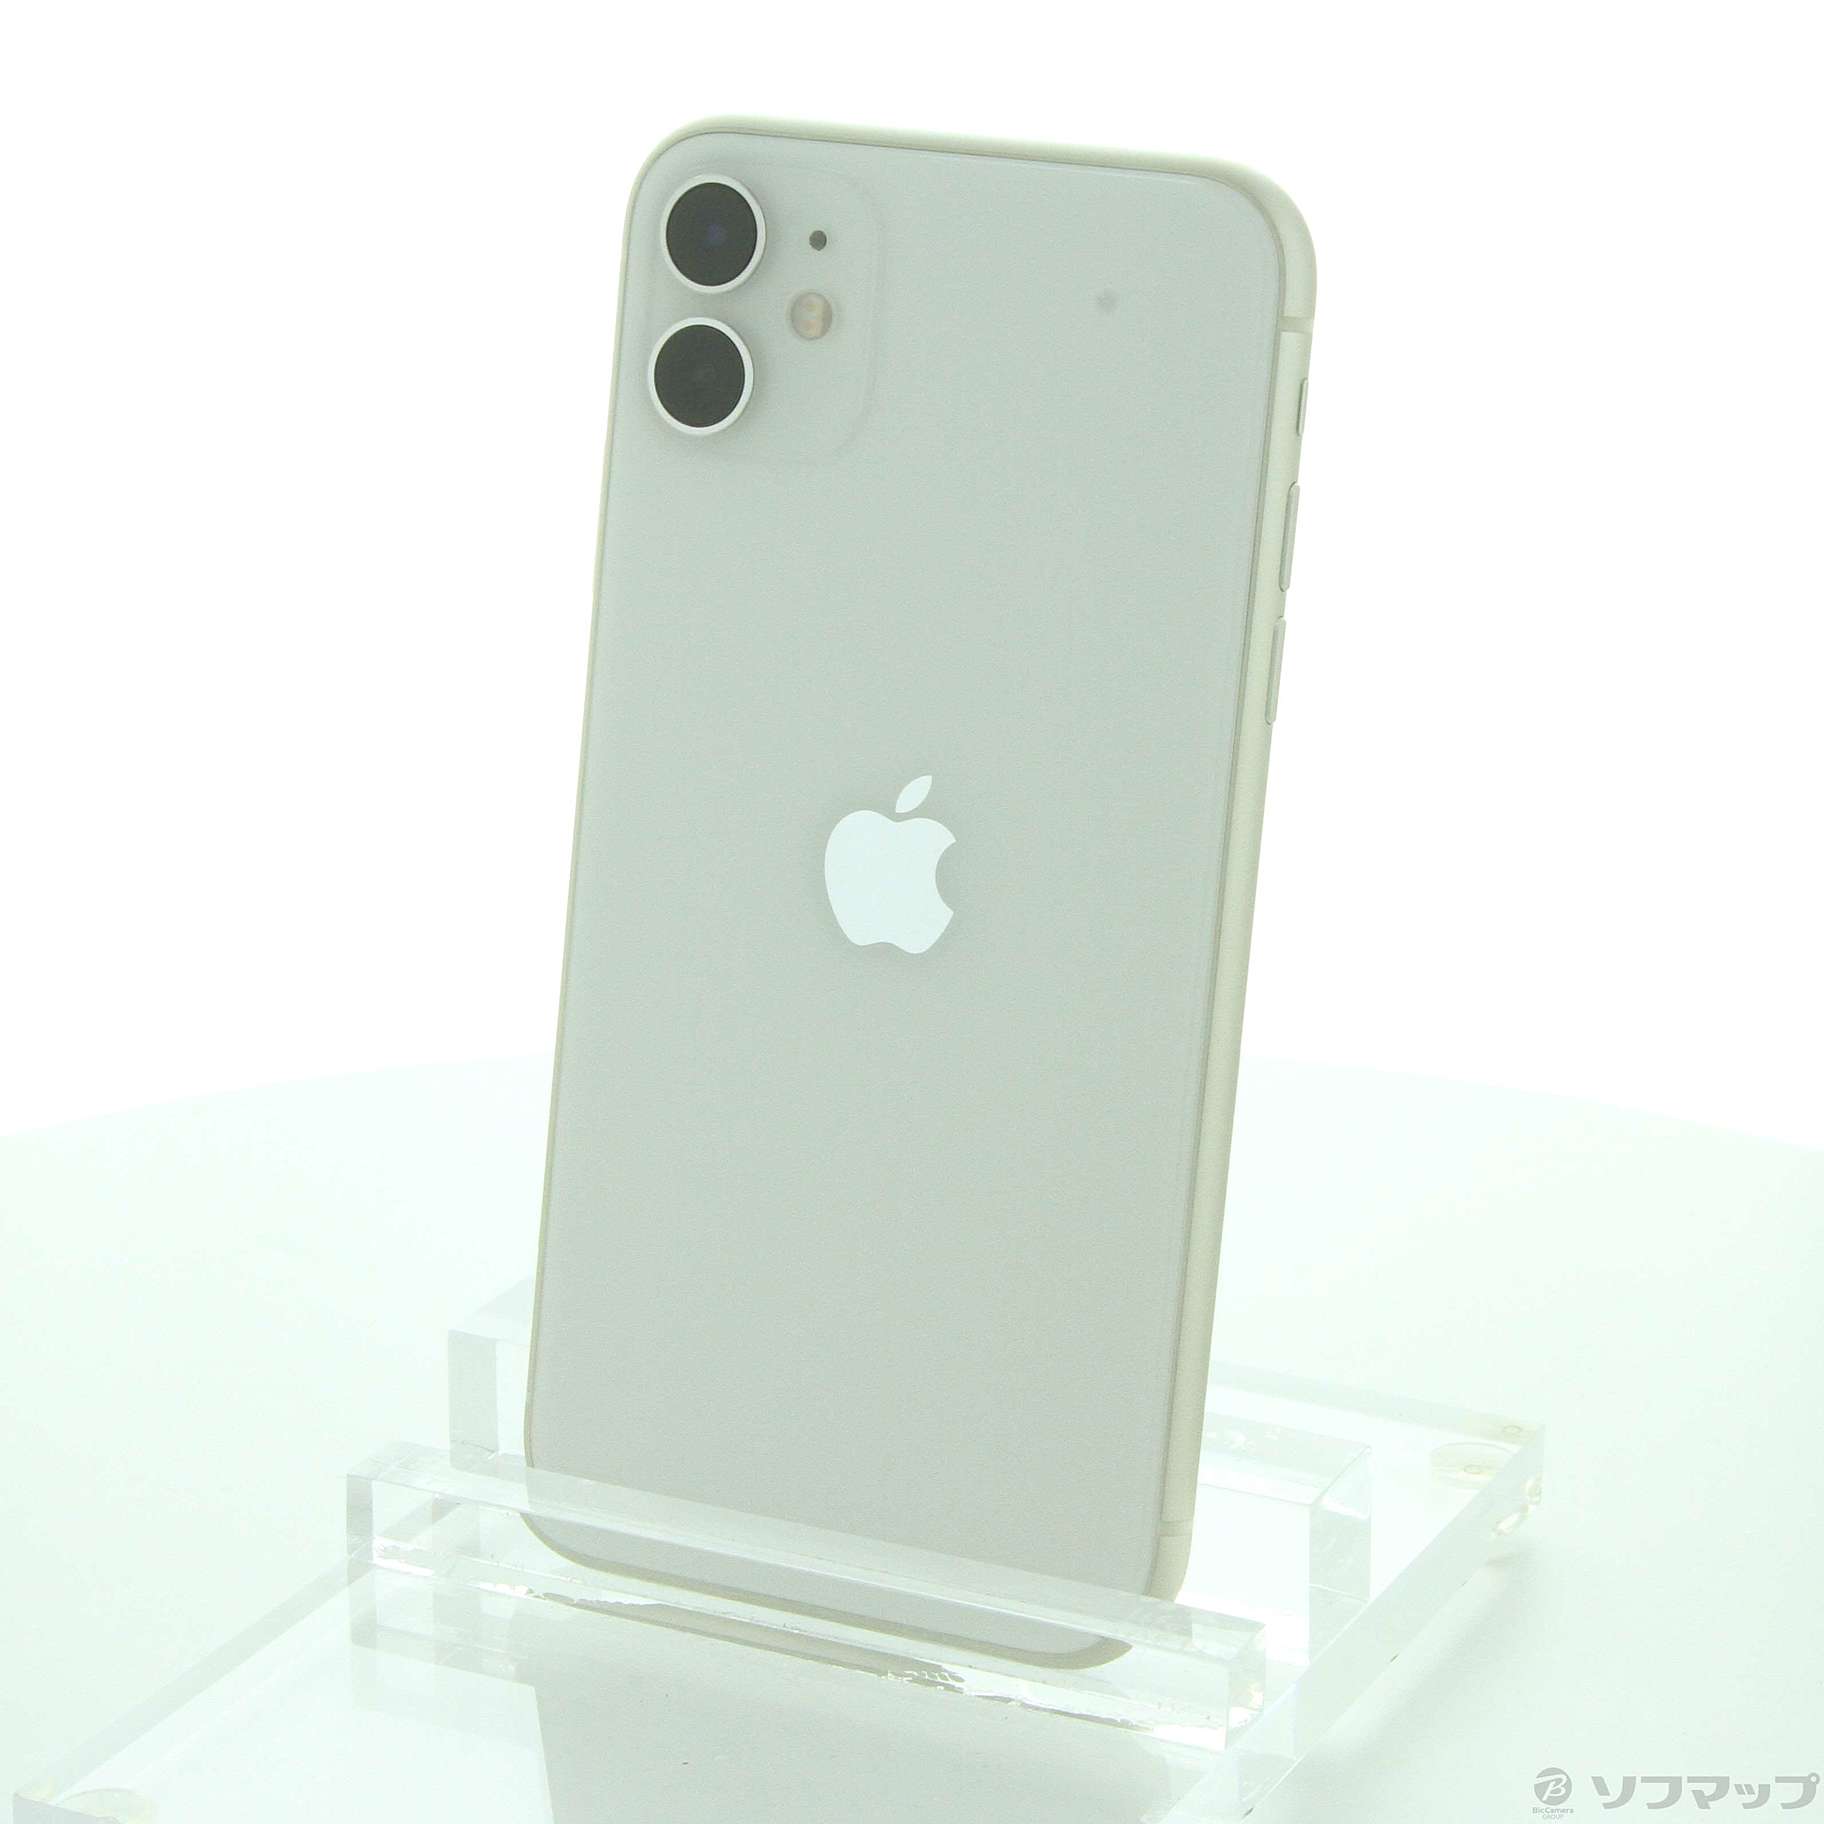 【再入荷即納】iPhone11 64GB ホワイト MHDC3J/A クリアケースセット スマートフォン本体